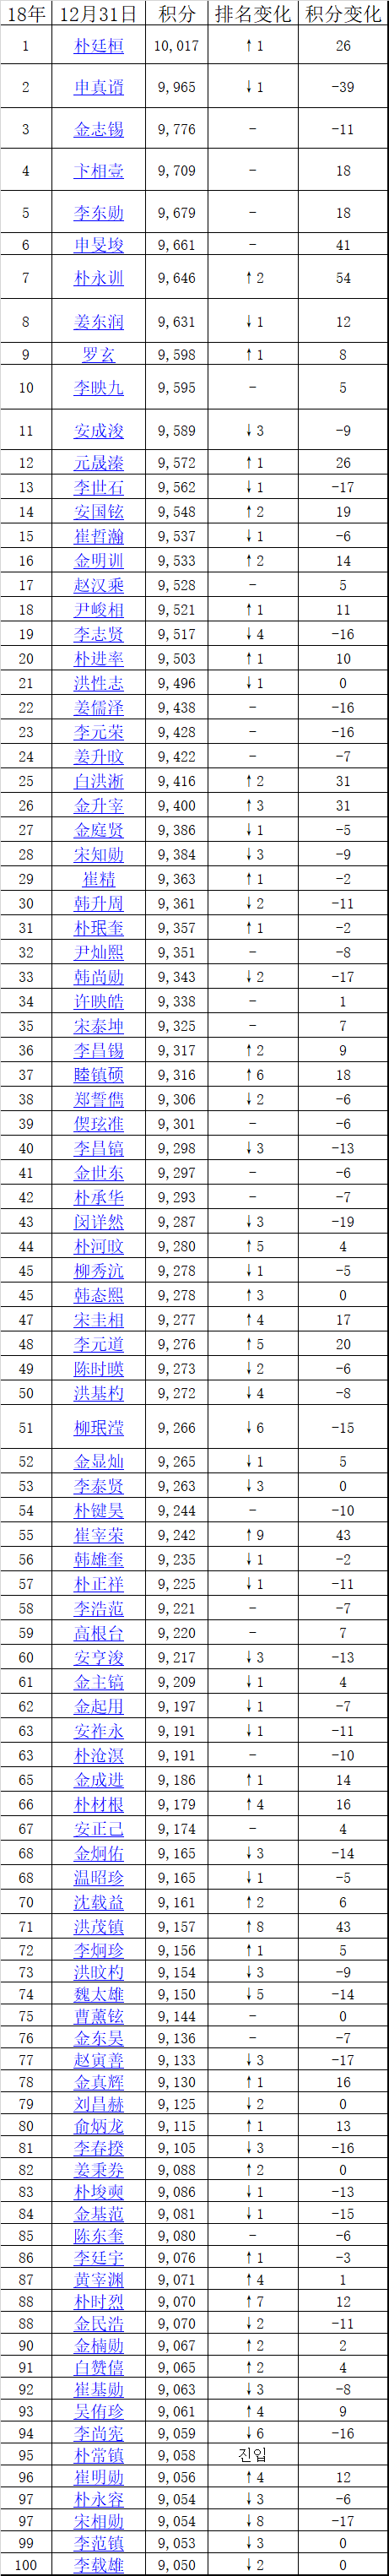 截至2018年12月31日韩国围棋排名